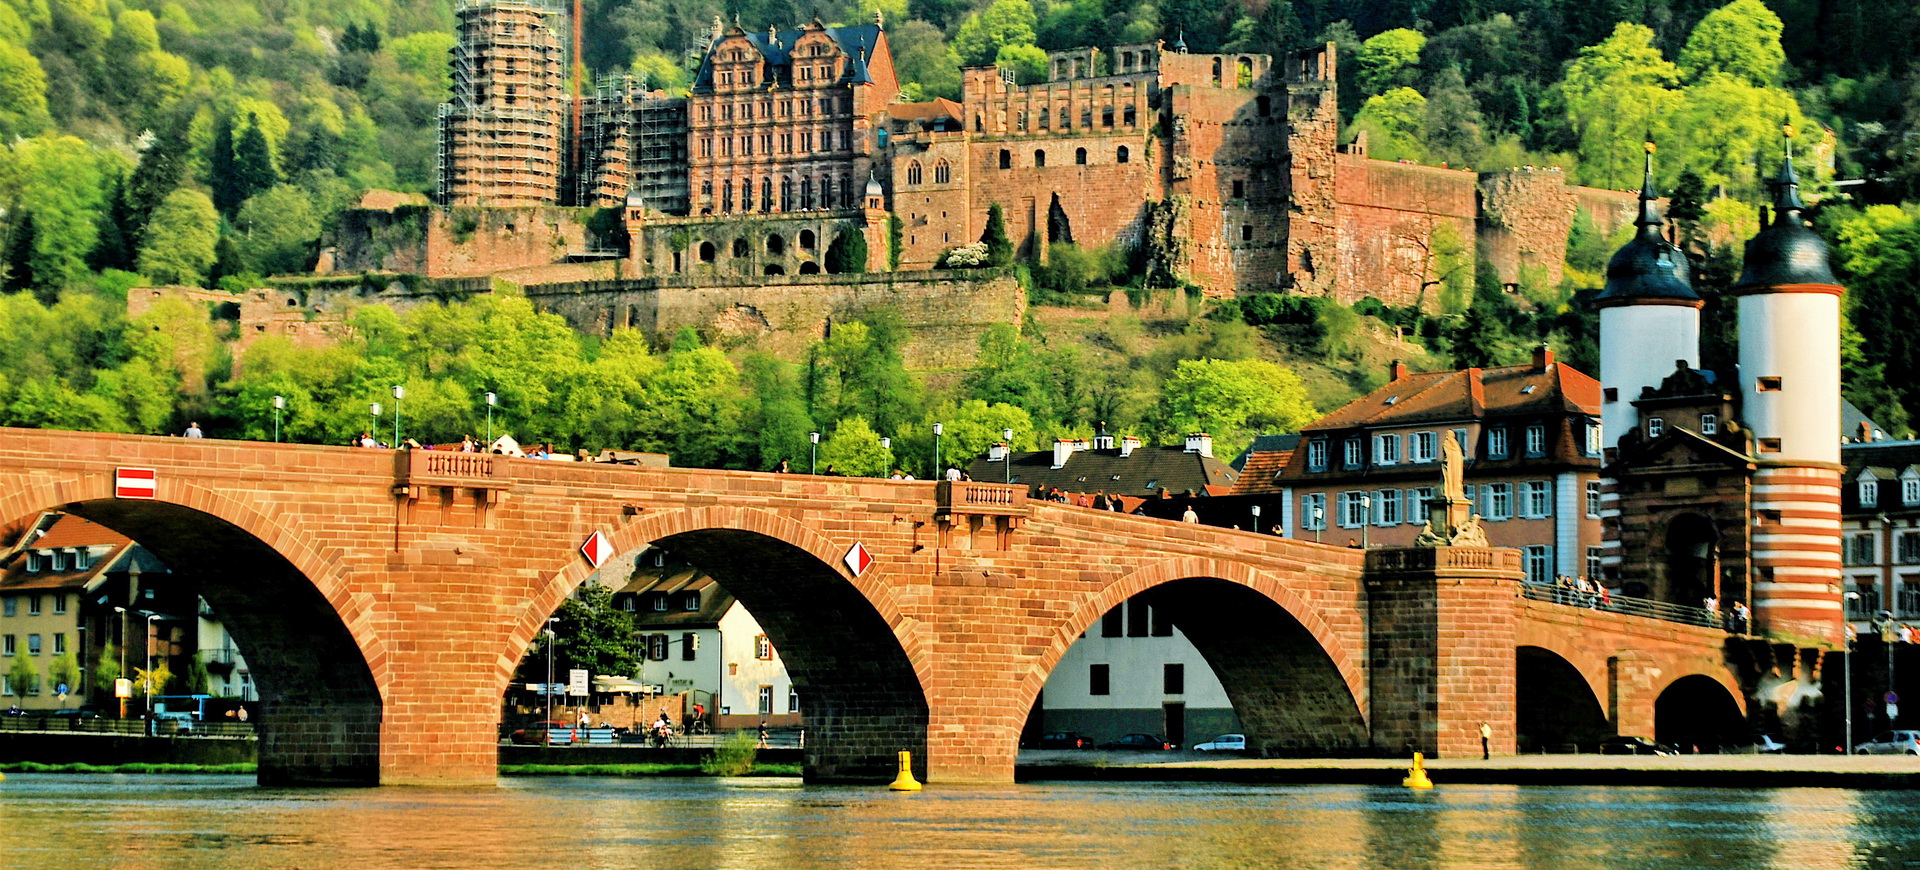 Formalités visa pour un voyage de tourisme en Allemagne